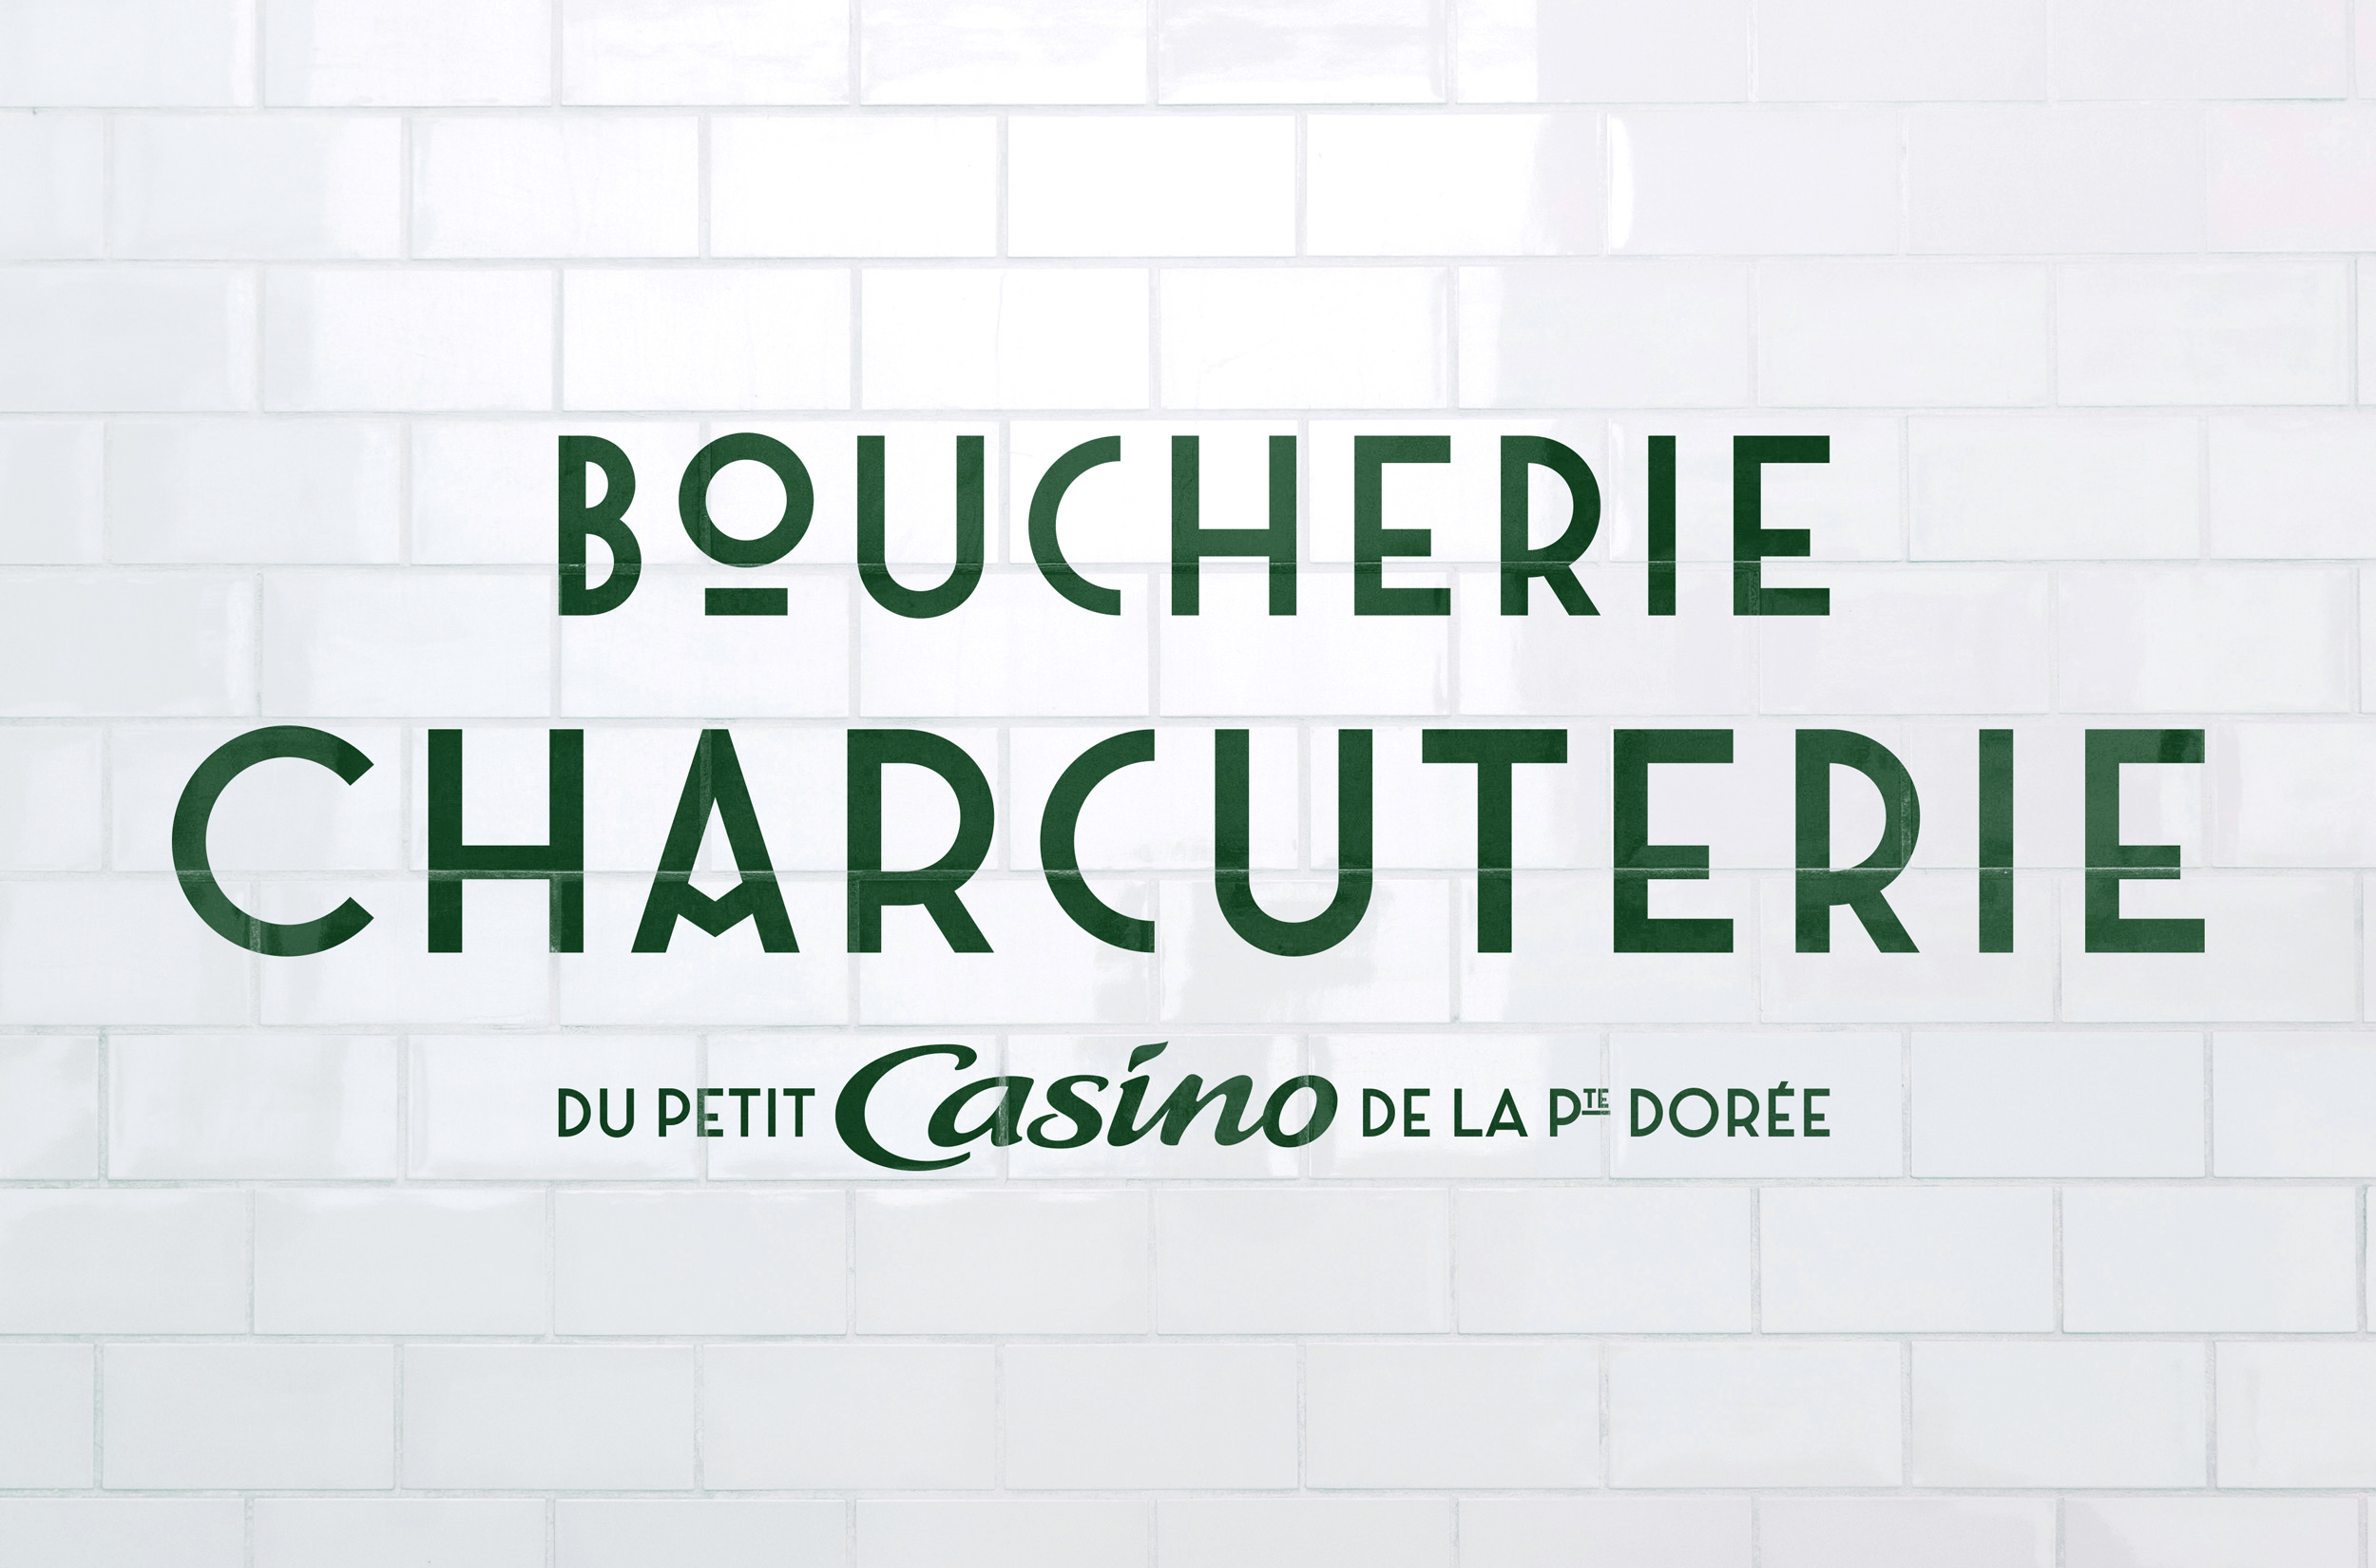 Typographie Le Petit Casino - 1